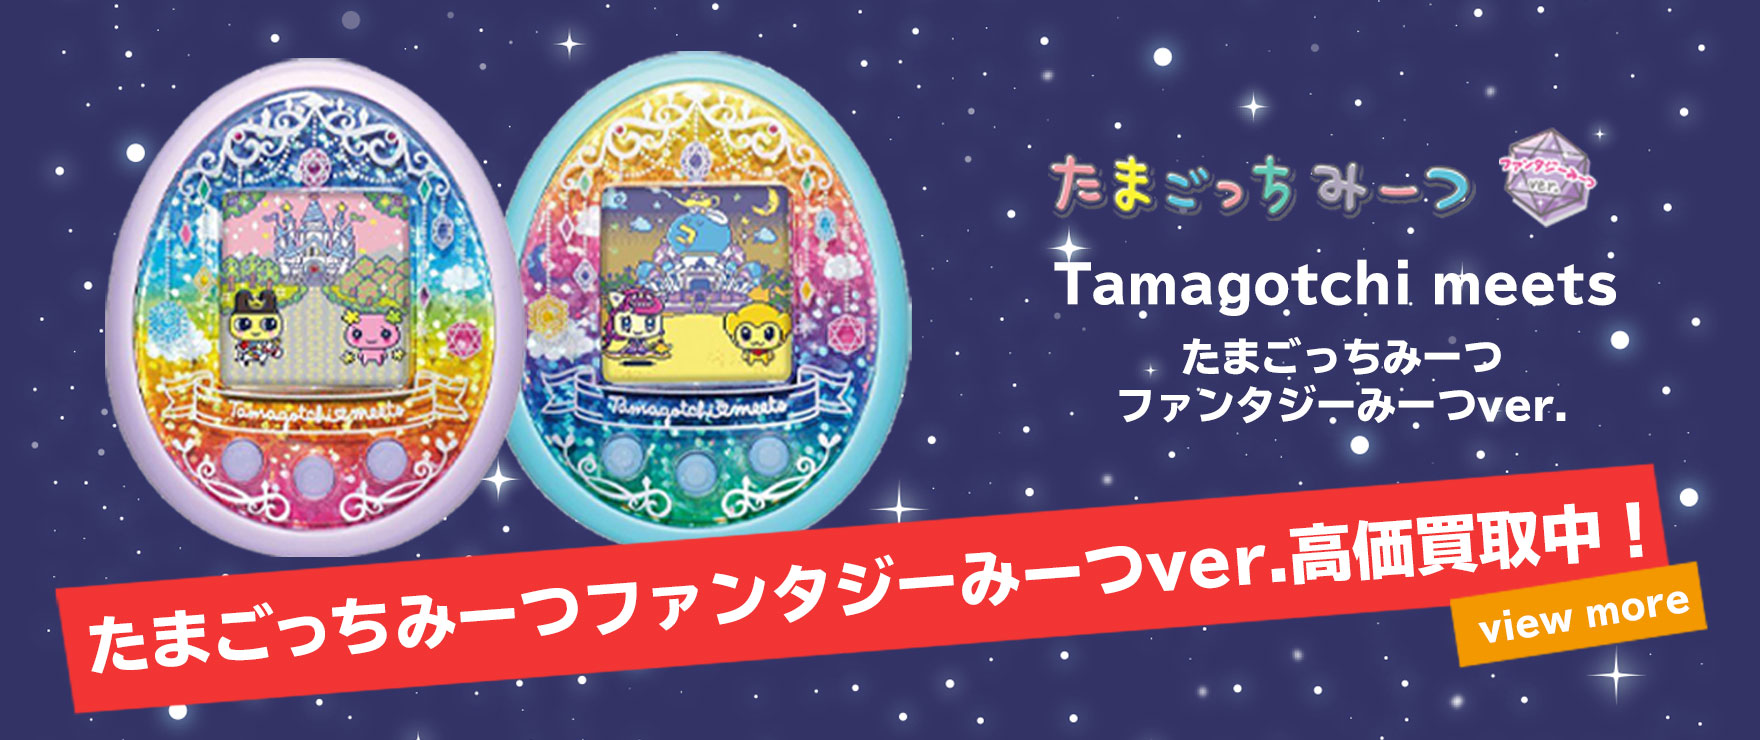 買取強化中】7月13日発売、新商品「たまごっちみーつ/Tamagotchi meets 